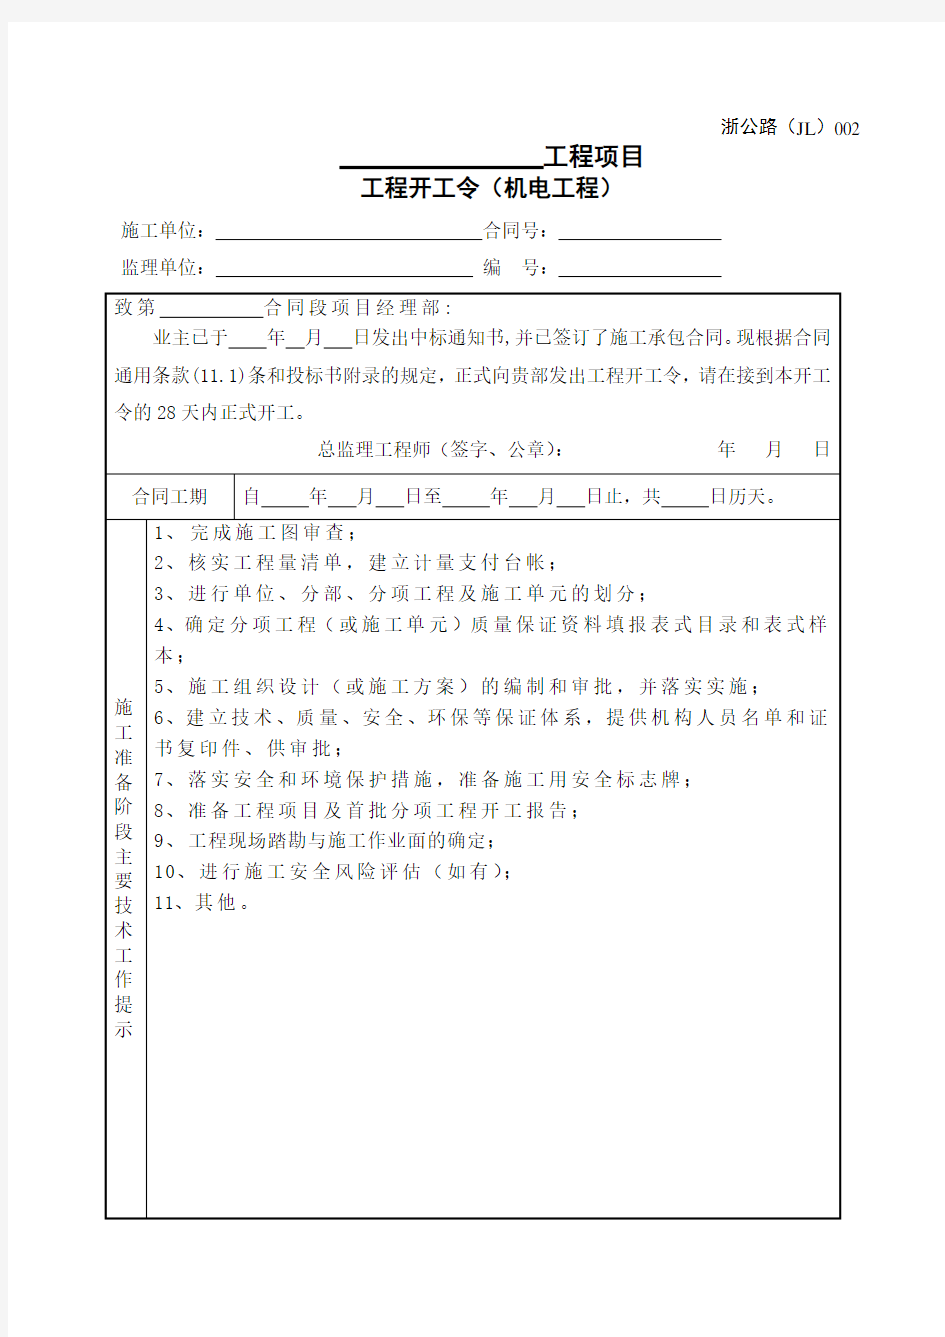 浙江省公路工程施工监理统一用表(2018 年修订版)